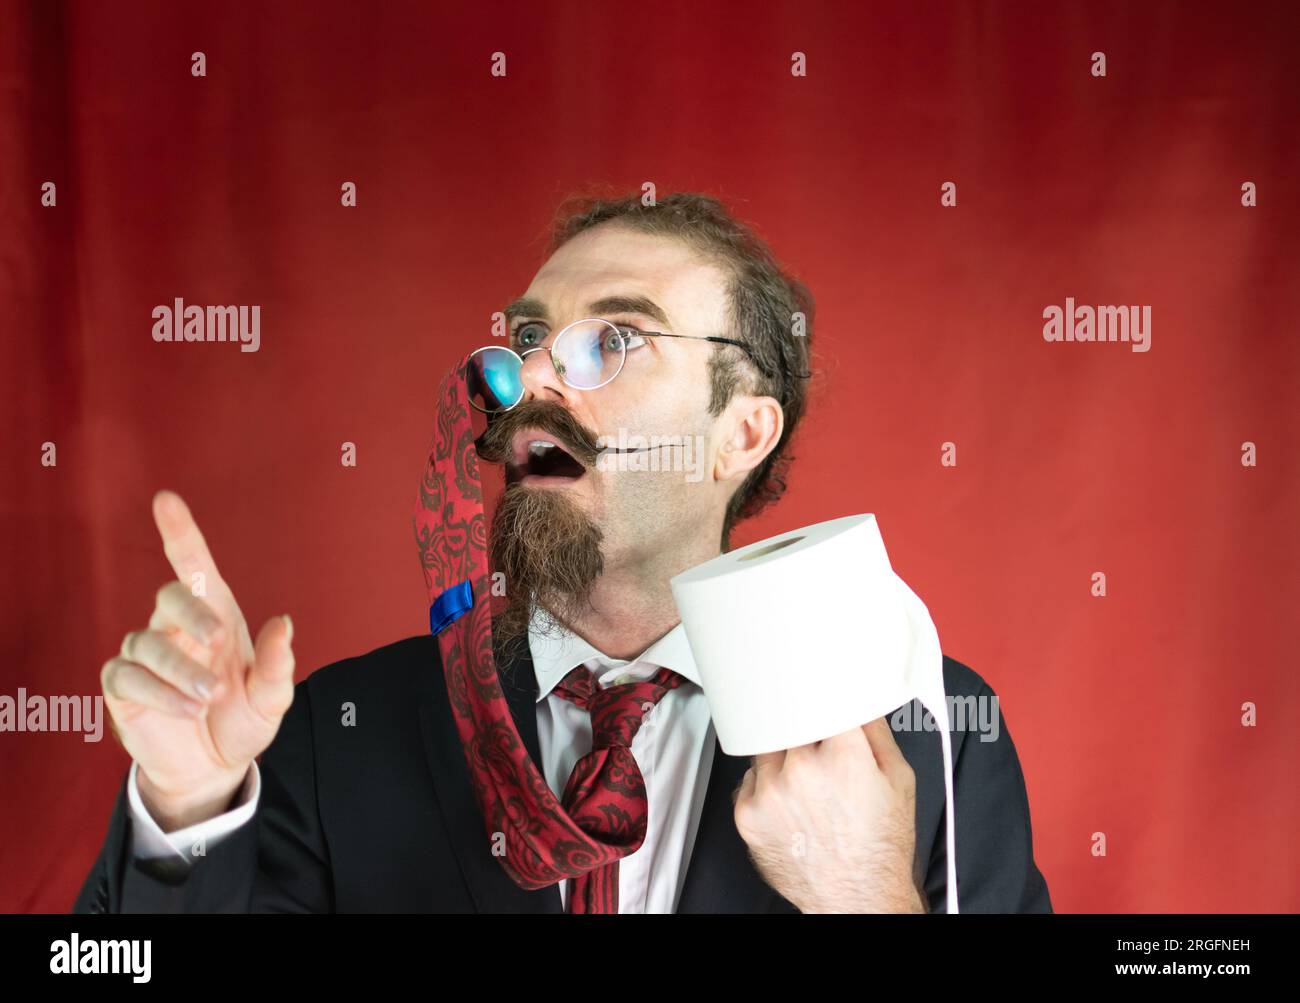 Homme drôle avec des lunettes, cravate rouge sur la tête et papier toilette à la main levant les yeux Banque D'Images